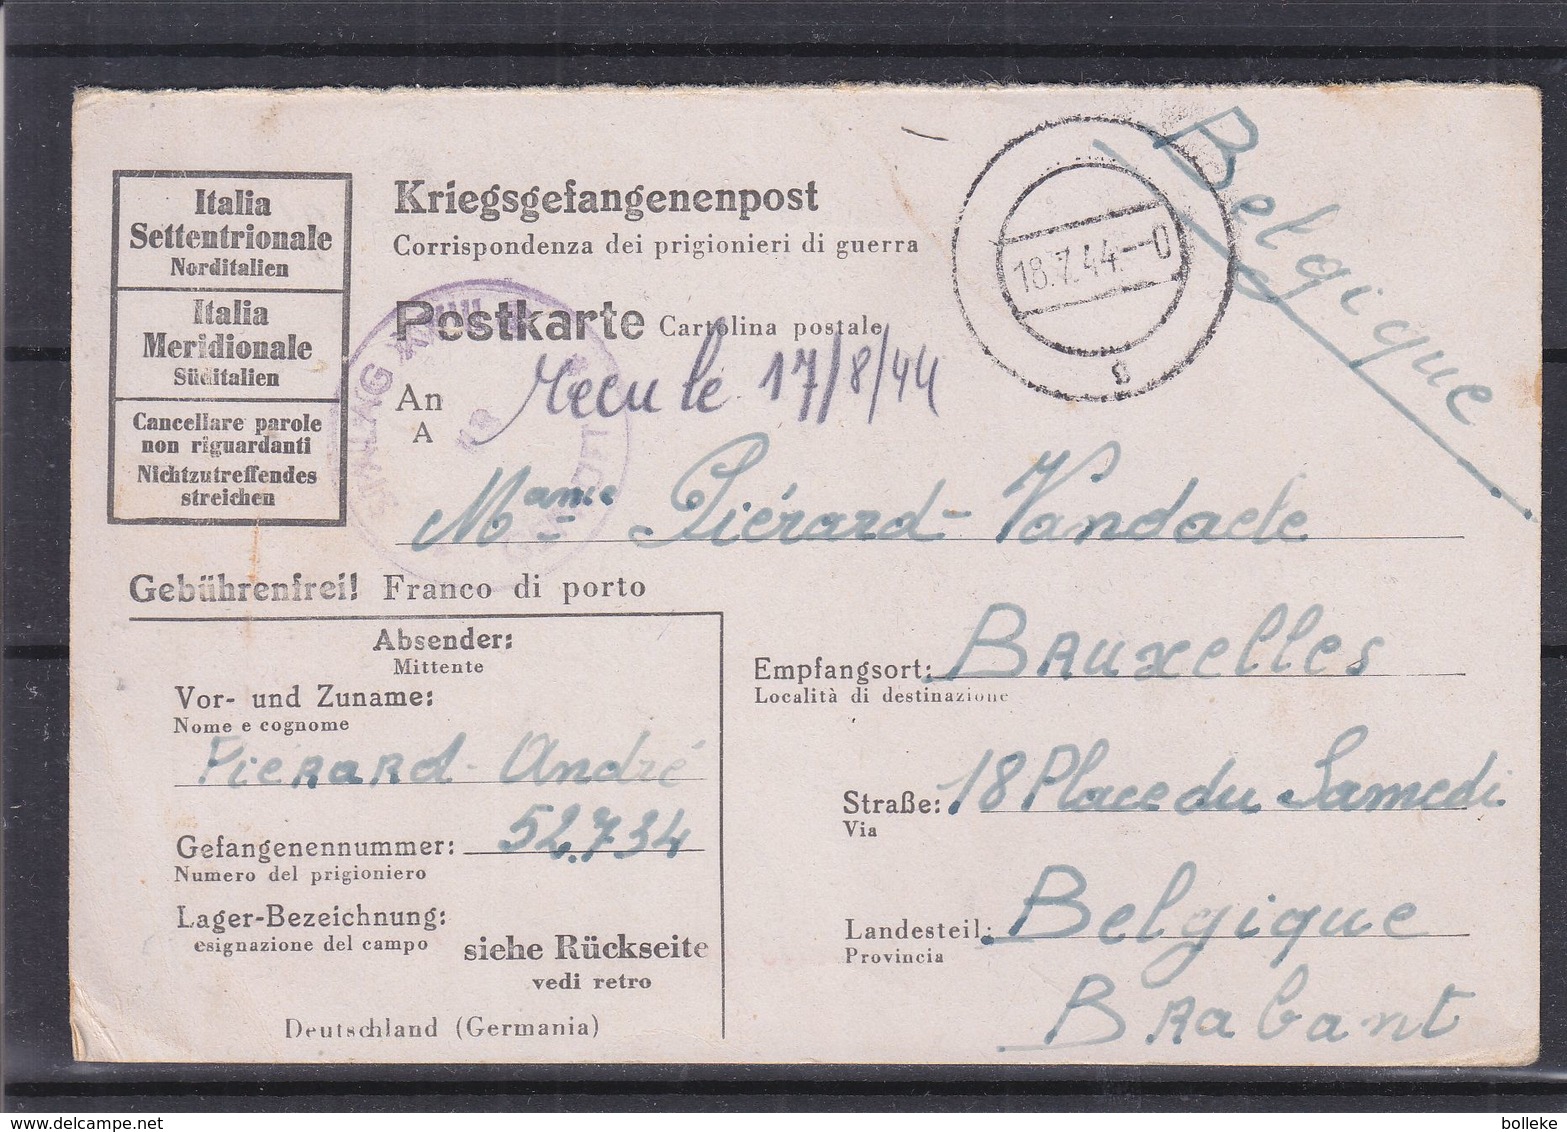 Italie - Carte Postale De 1944 - Prisonniers De Guerre - Kriegsgefangenenpost - Exp Vers Bruxelles - Avec Censure - Marcophilie